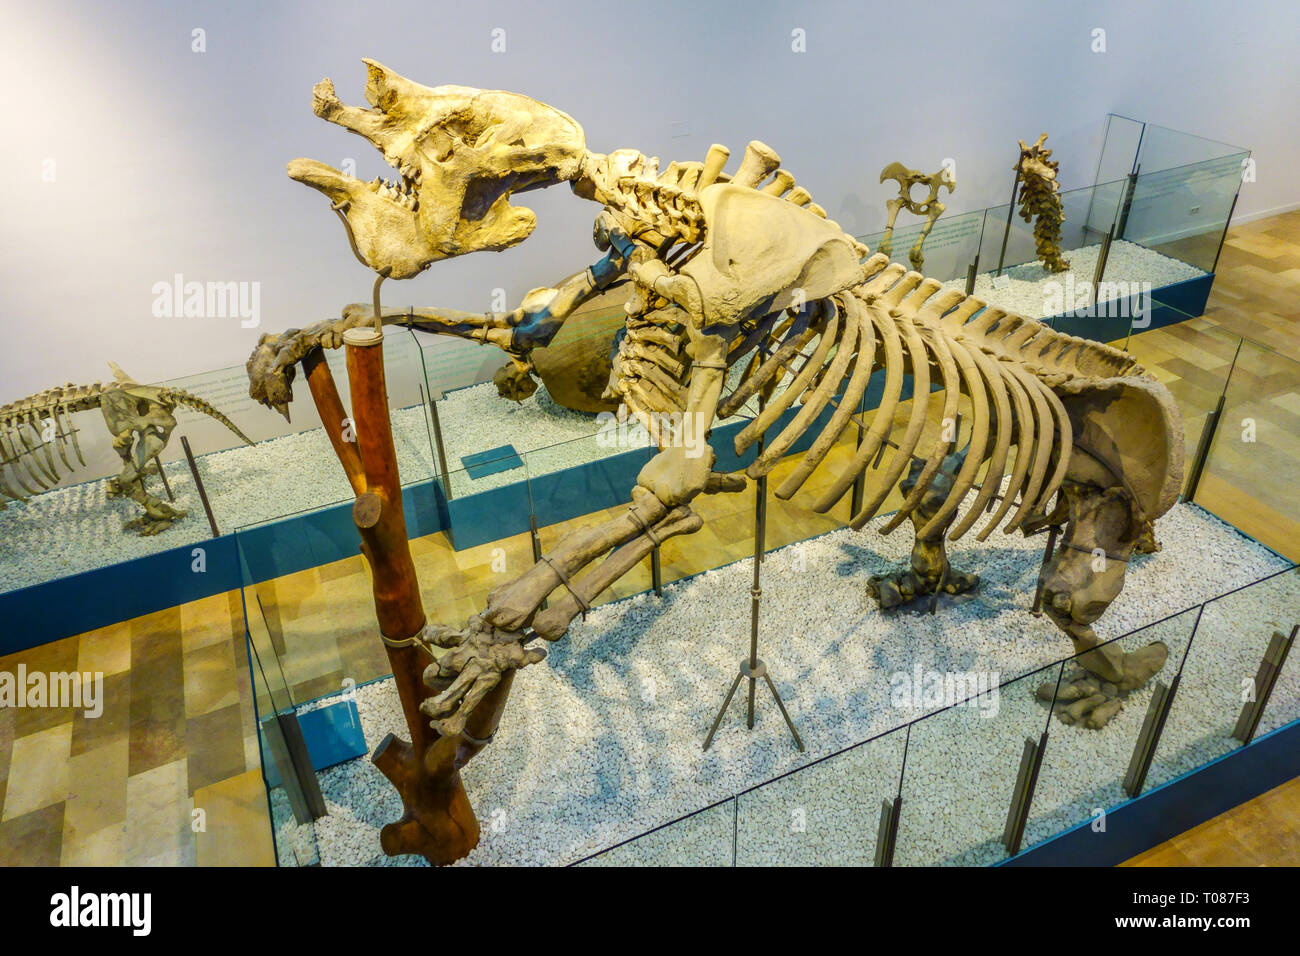 Valencia Espagne musée des Sciences naturelles, Museu de Ciències Naturals de Valencia Espagne, squelette animal préhistorique Banque D'Images